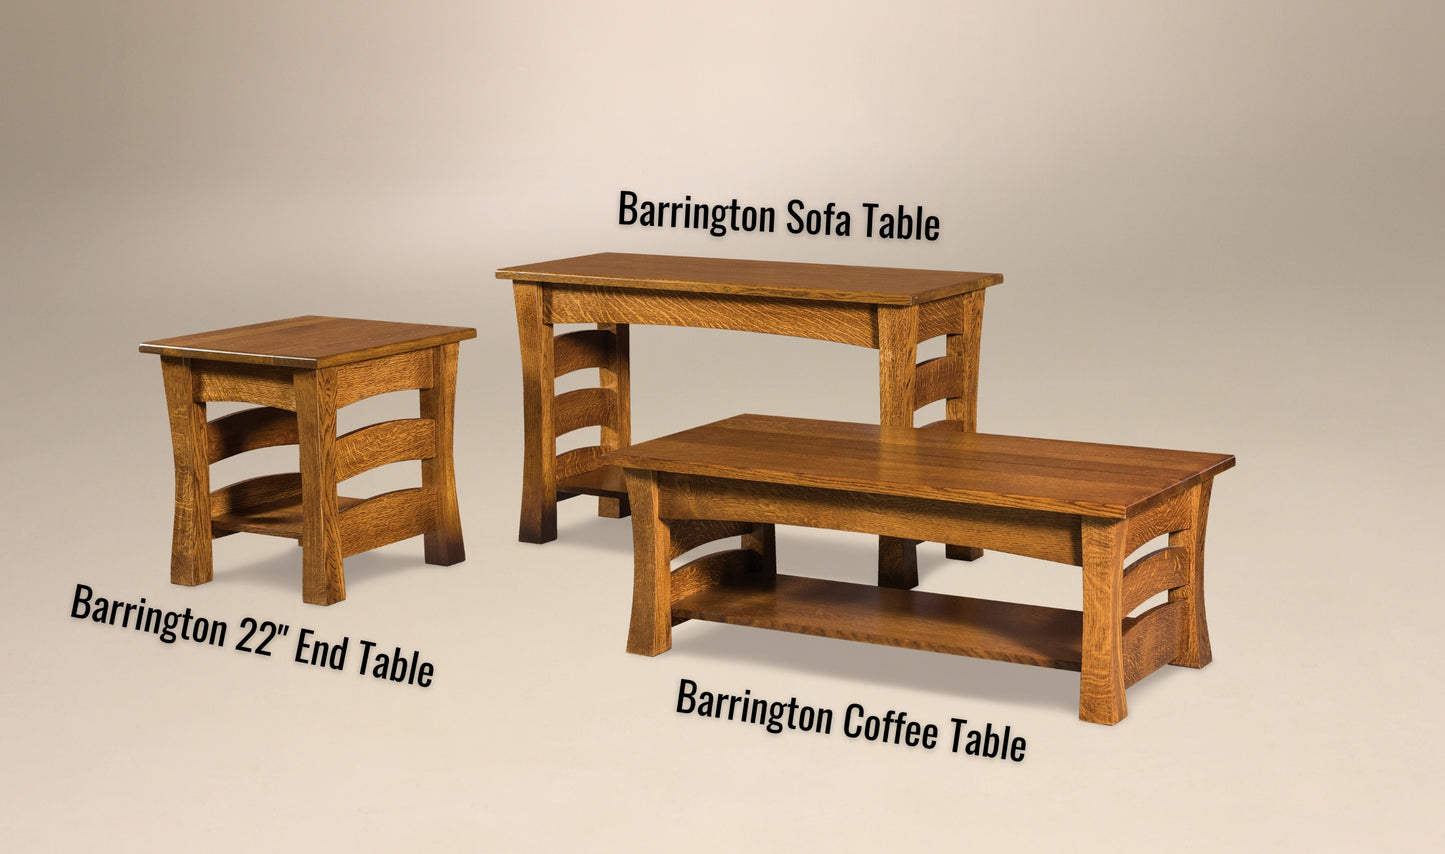 Barrington 22" End Table